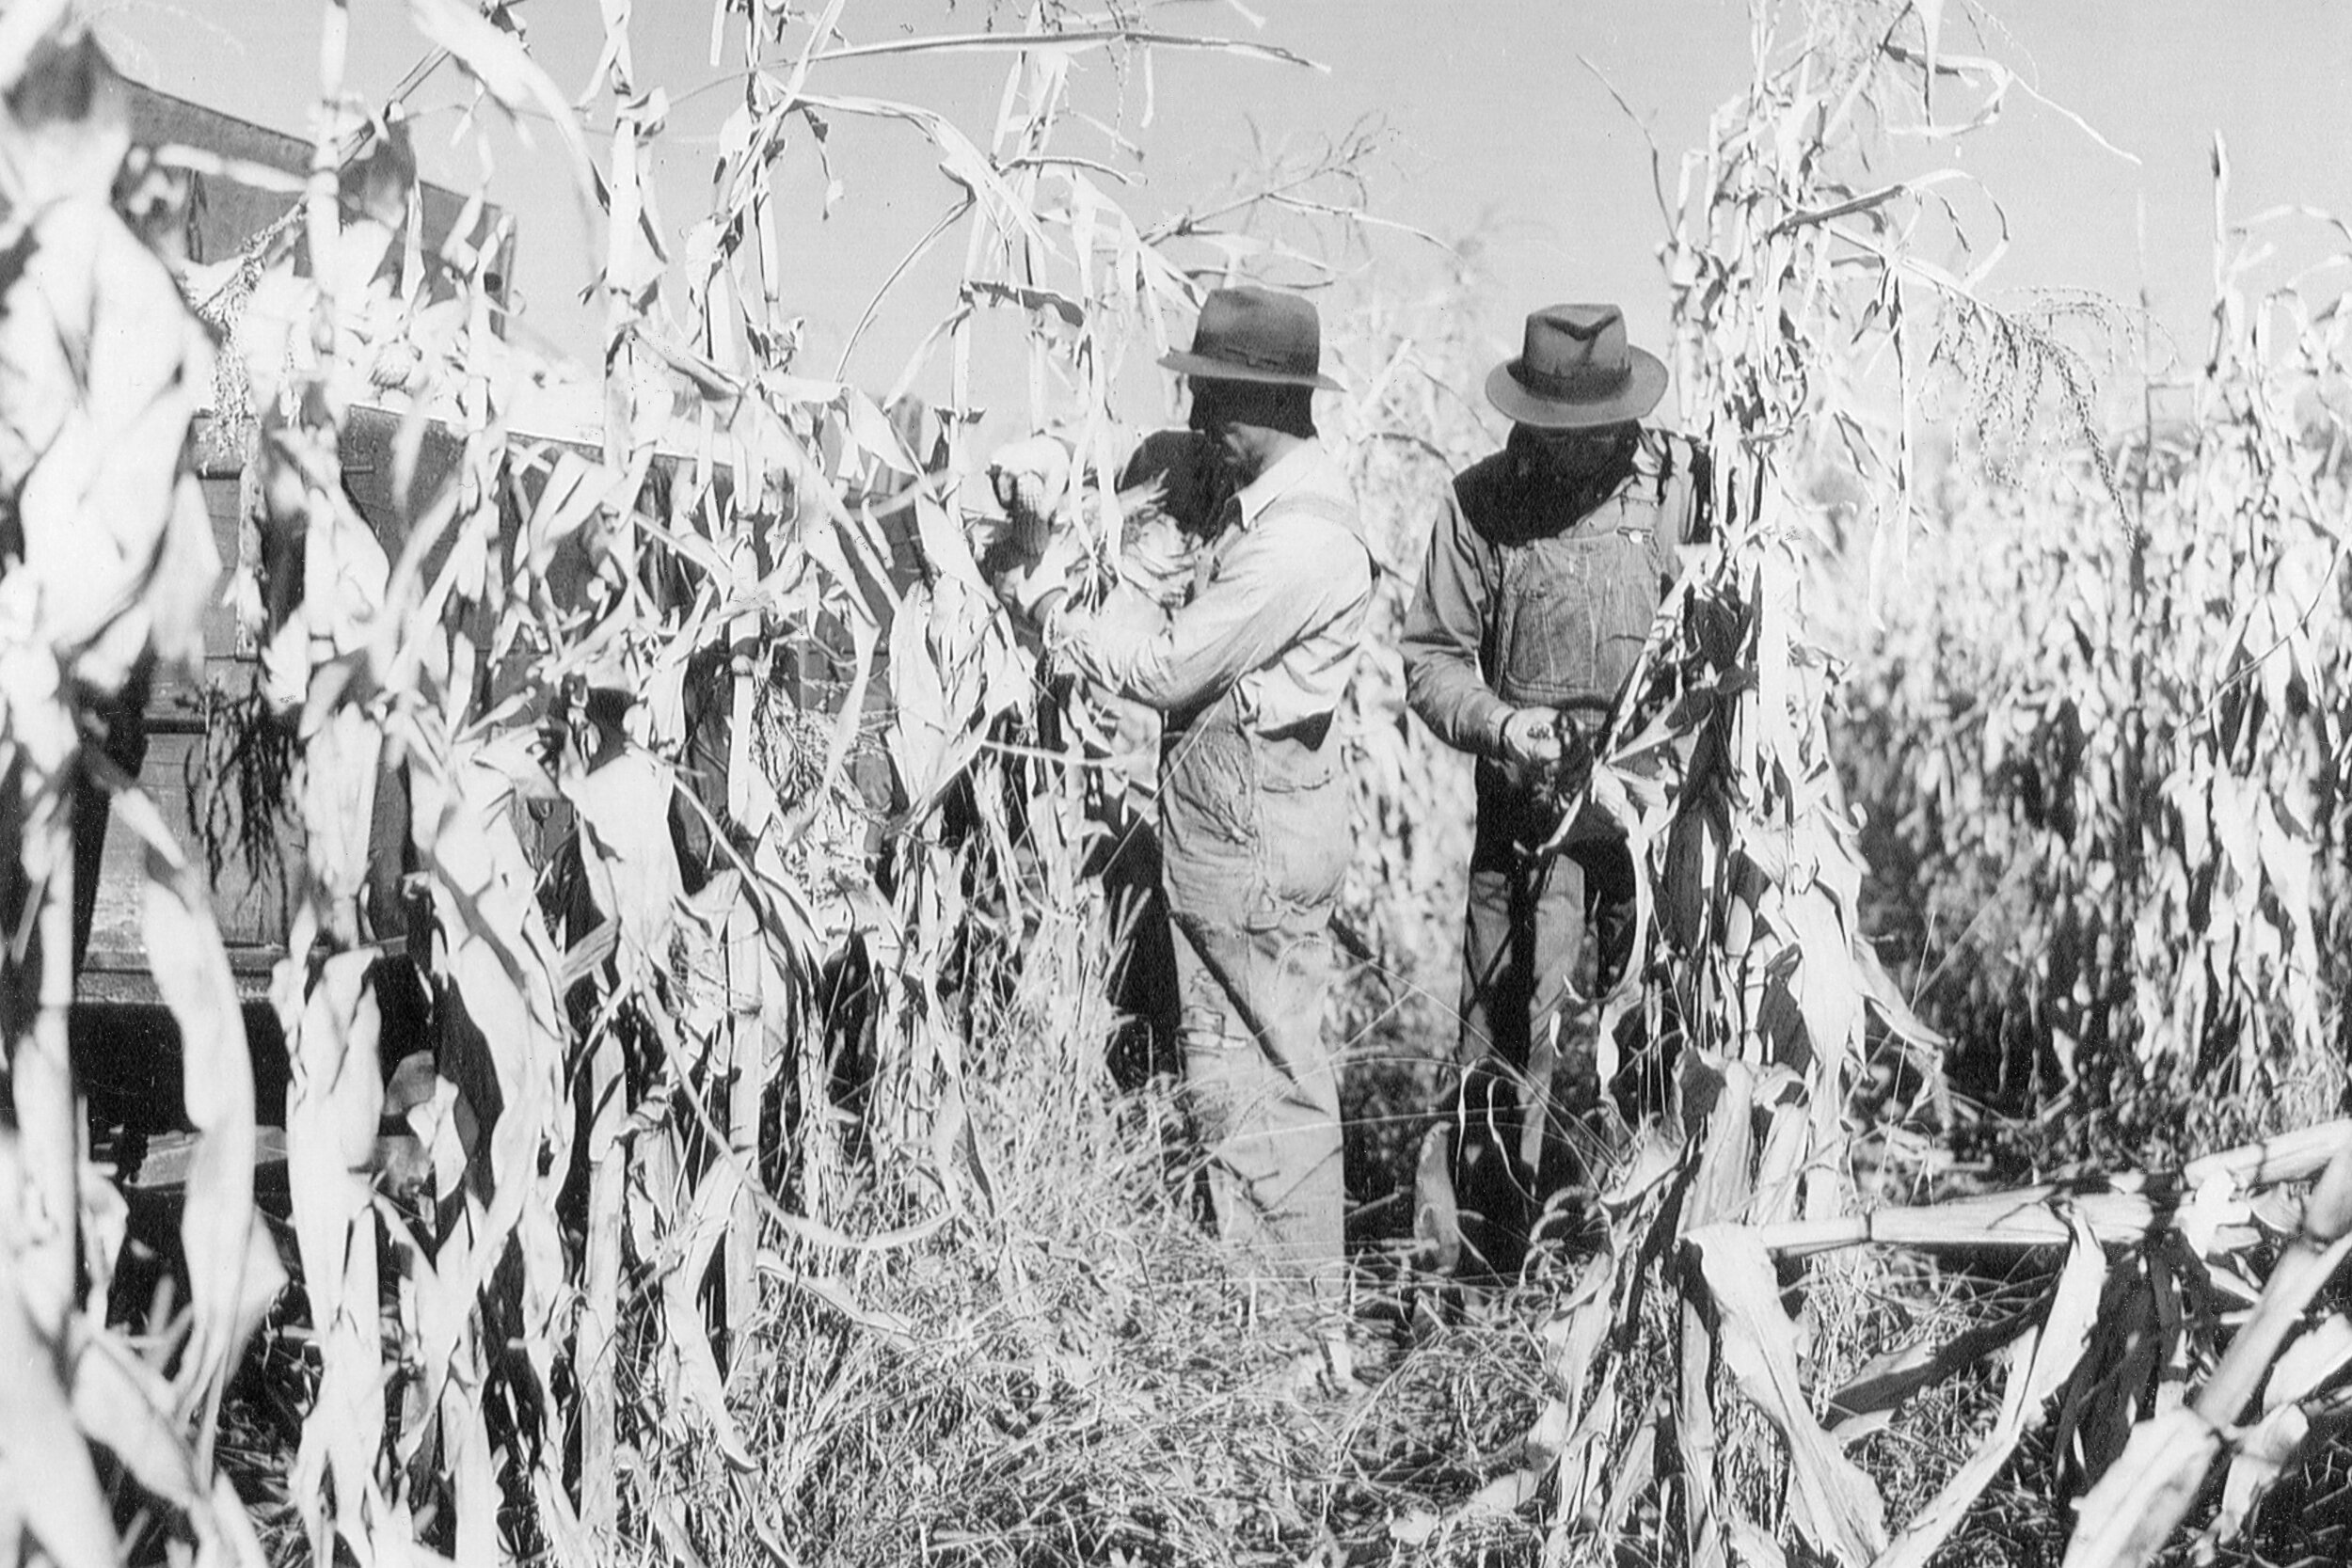 Husking corn 1953